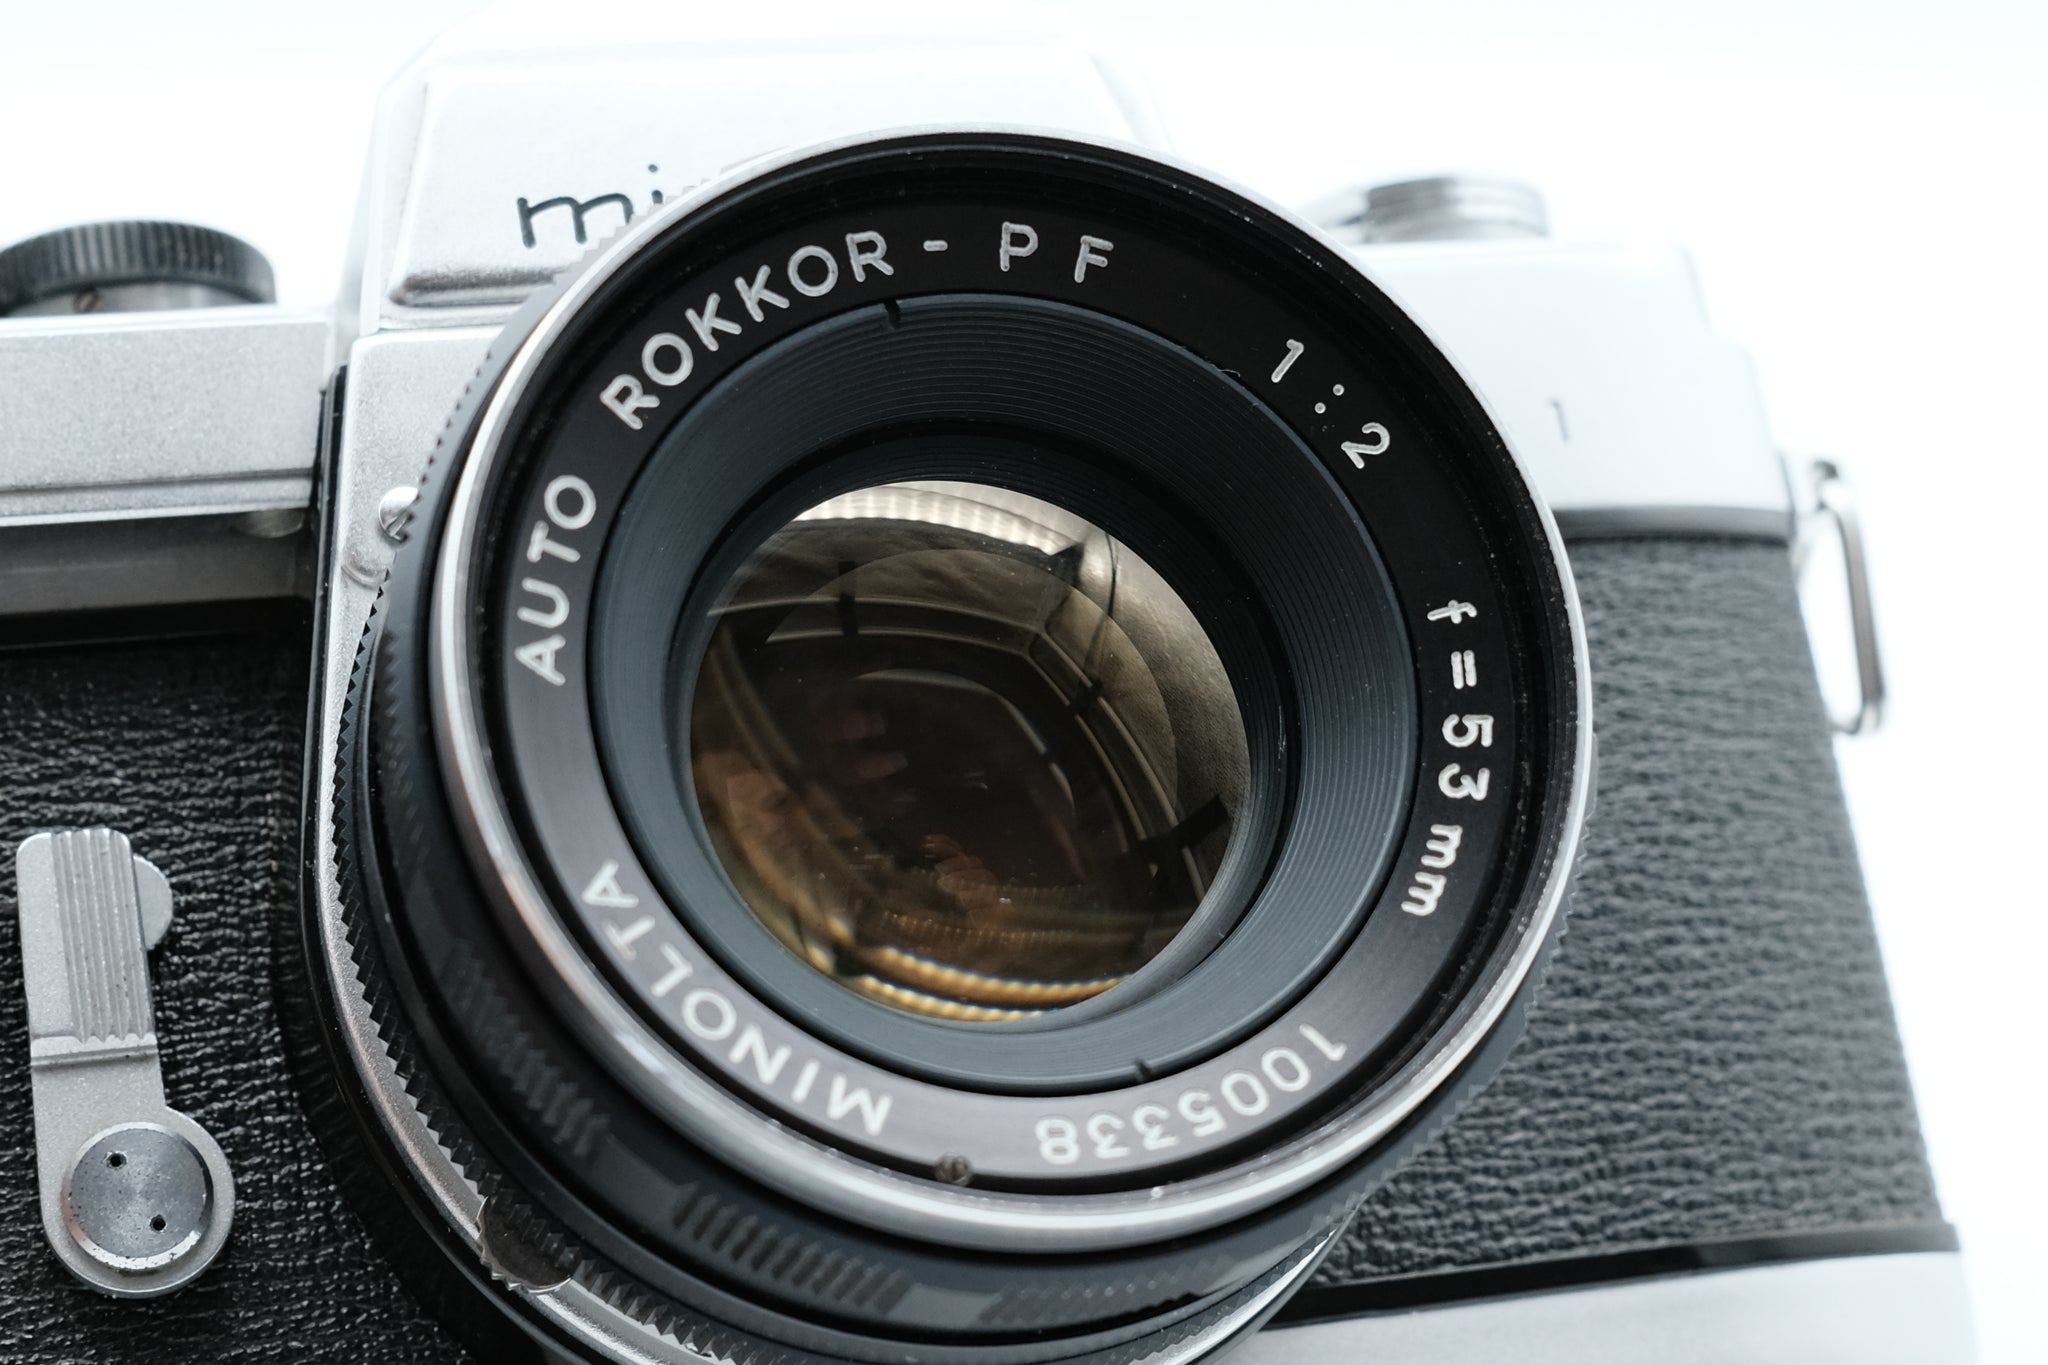 Minolta SR-1 (Model E) w/Minolta Auto Rokkor-PF 53mm f2 Lens - Great Cond